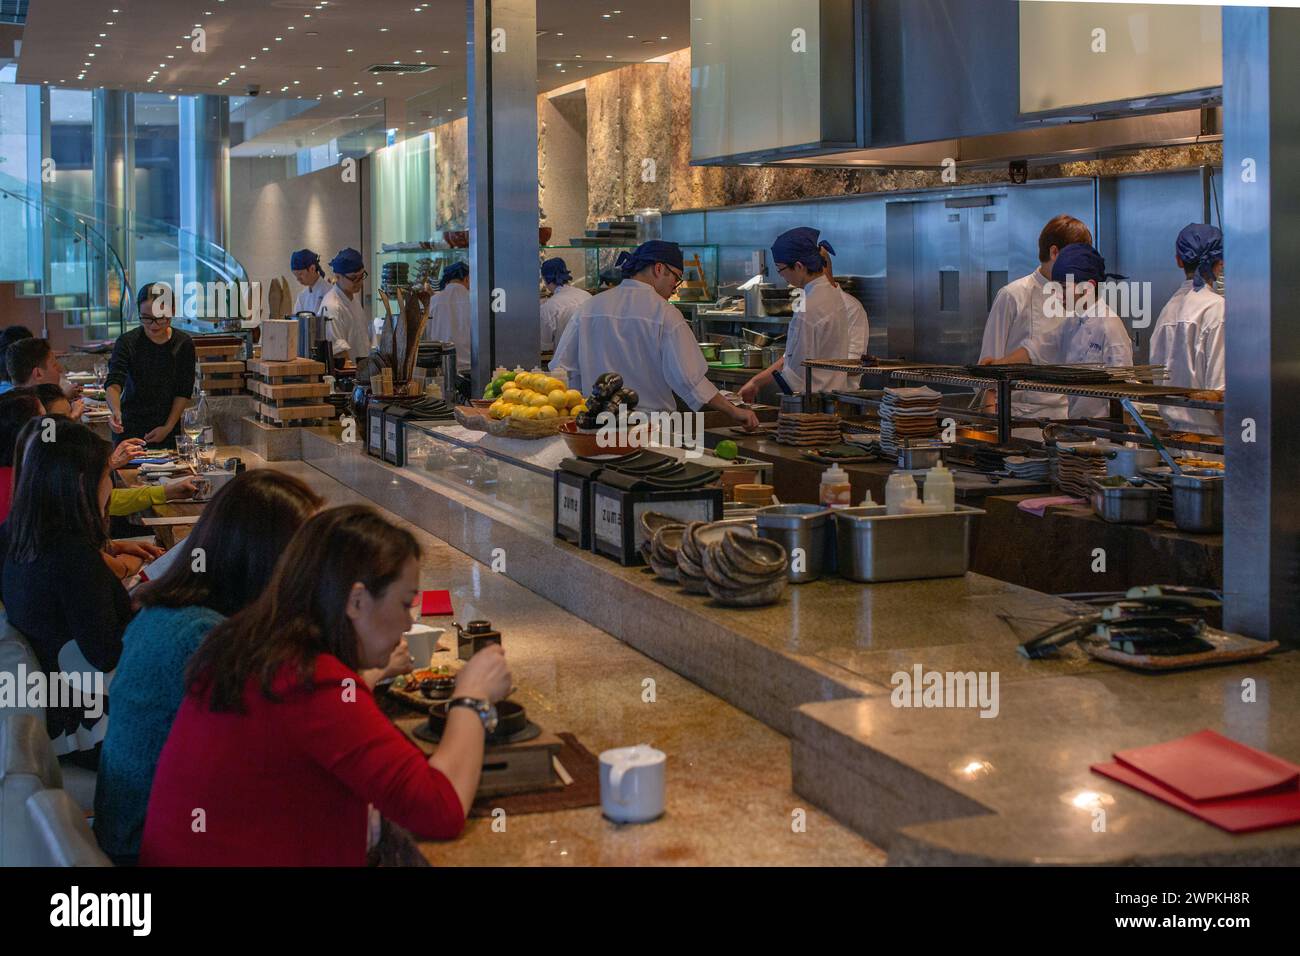 Die Leute essen zu Mittag im Restaurant zuma, hongkong. Stockfoto